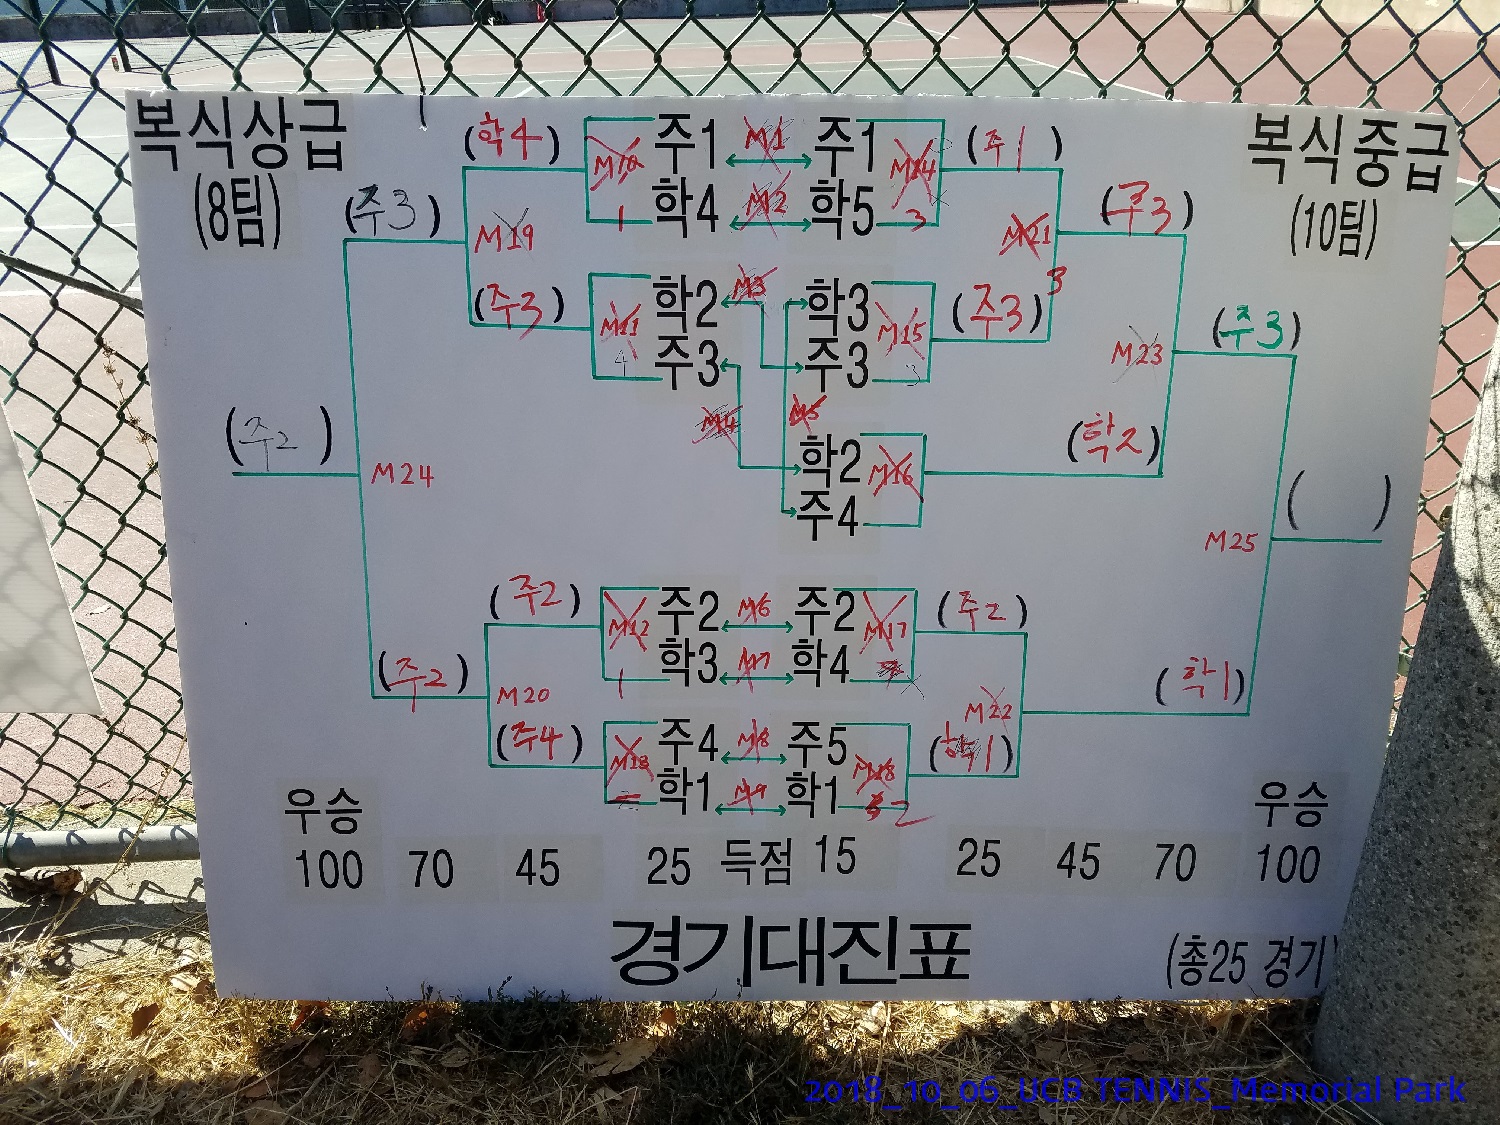 resized_2018_10_06_UCB Tennis at Memorial Park_152555.jpg